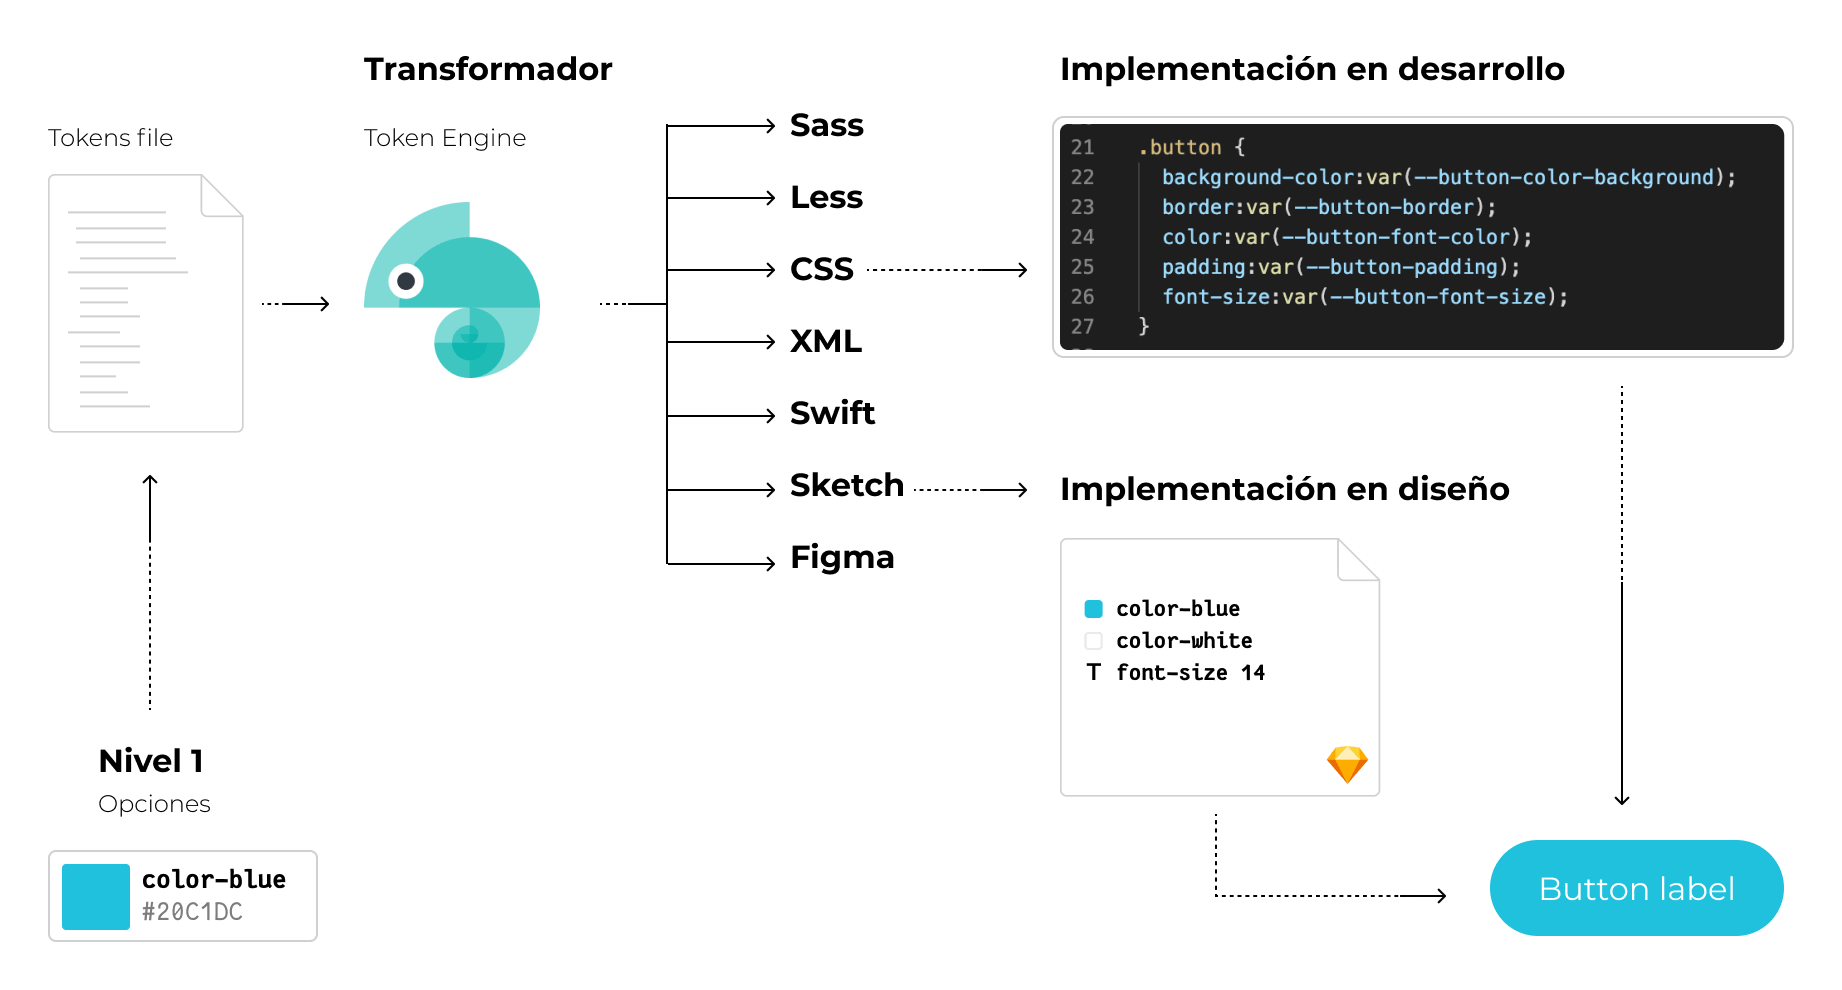 Imagen mostrando los pasos entre niveles de token, transformador en output css y su implementación en desarrollo.